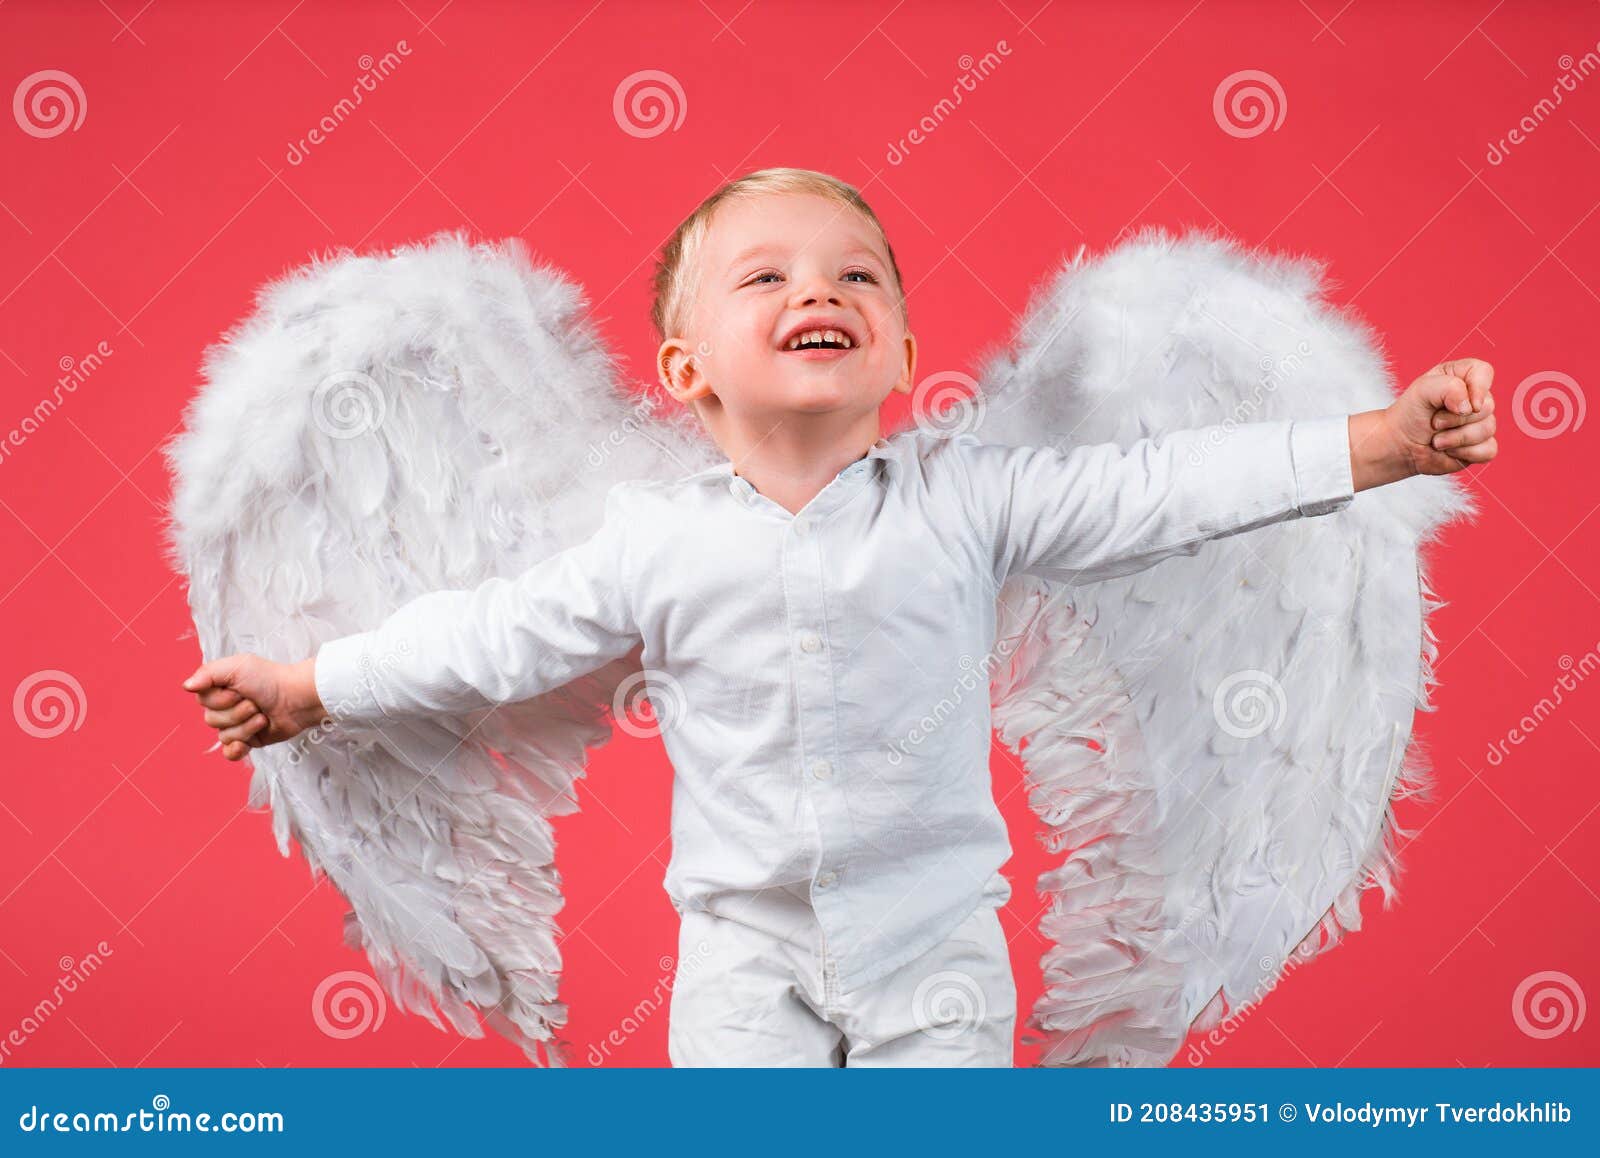 快樂的小男孩帶著翅膀的矢量圖, 羽毛, 飛, 幽默向量圖案素材免費下載，PNG，EPS和AI素材下載 - Pngtree